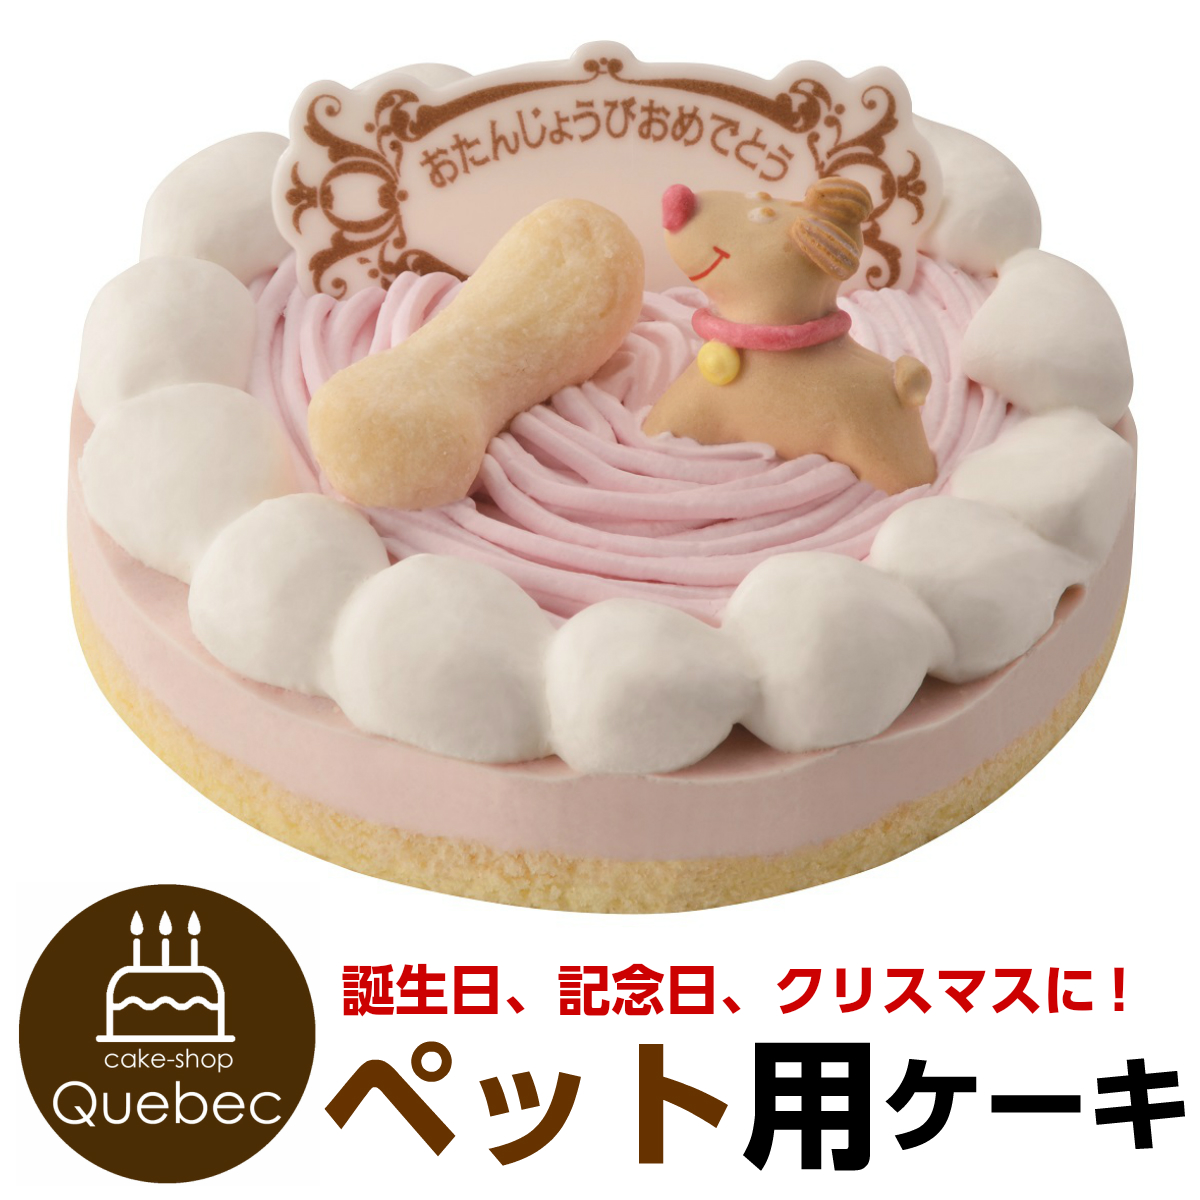 楽天市場 ペットケーキ 誕生日ケーキ ストロベリー 記念日ケーキ 犬猫兼用 ペット用ケーキ 暮らしの総合デパート ケベック